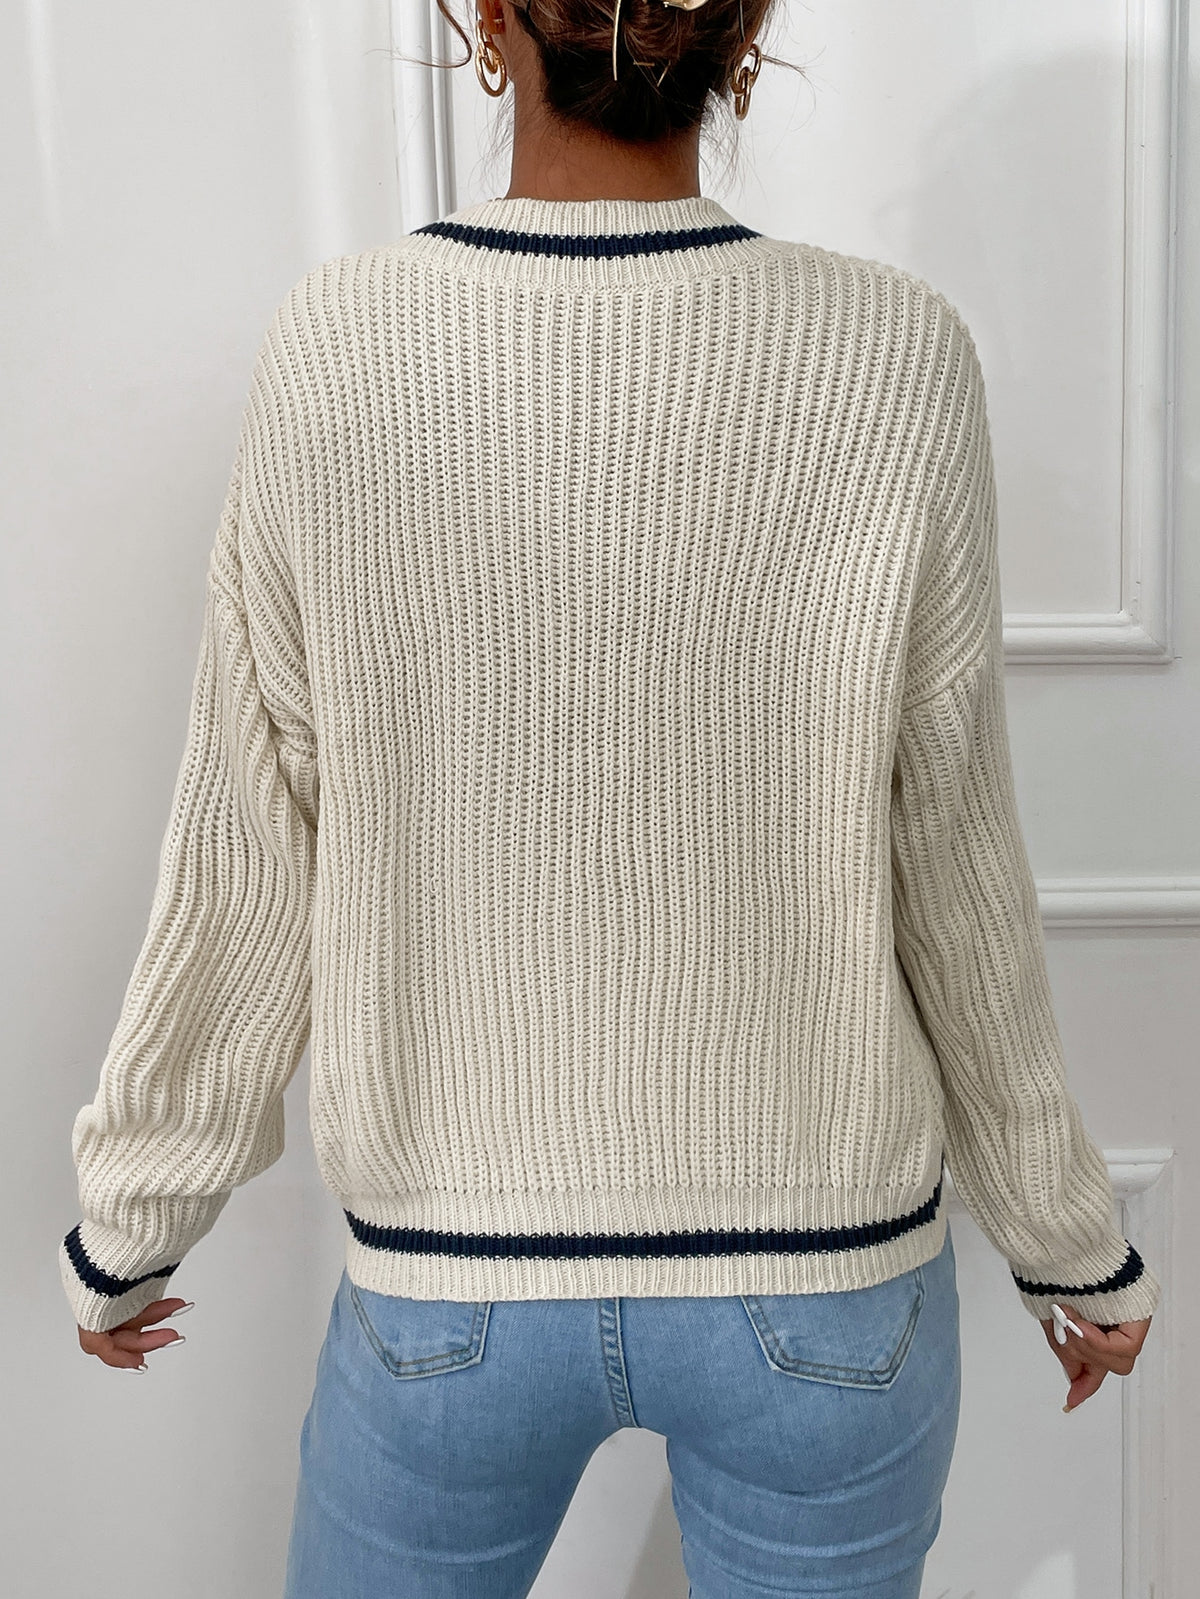 Striped Trim Sweater